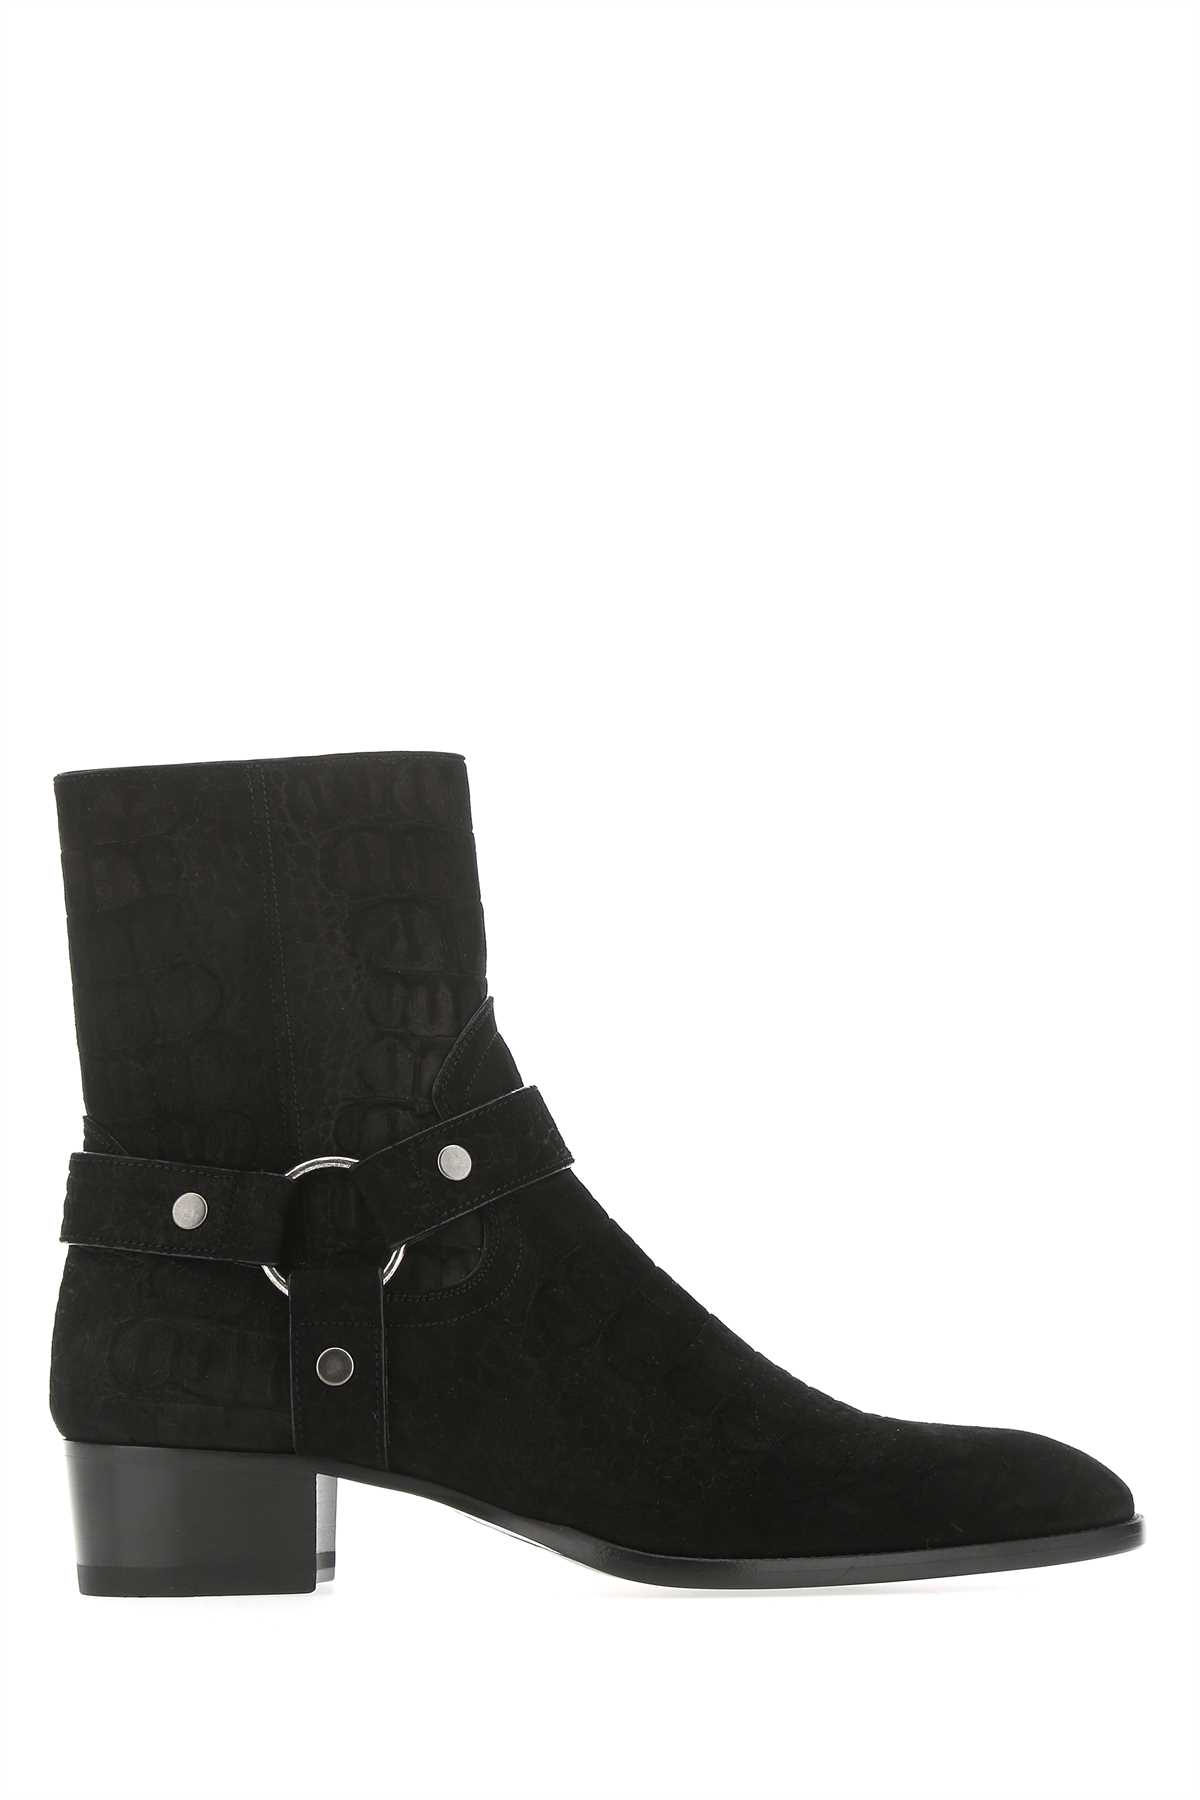 Saint Laurent Black Suede Boots